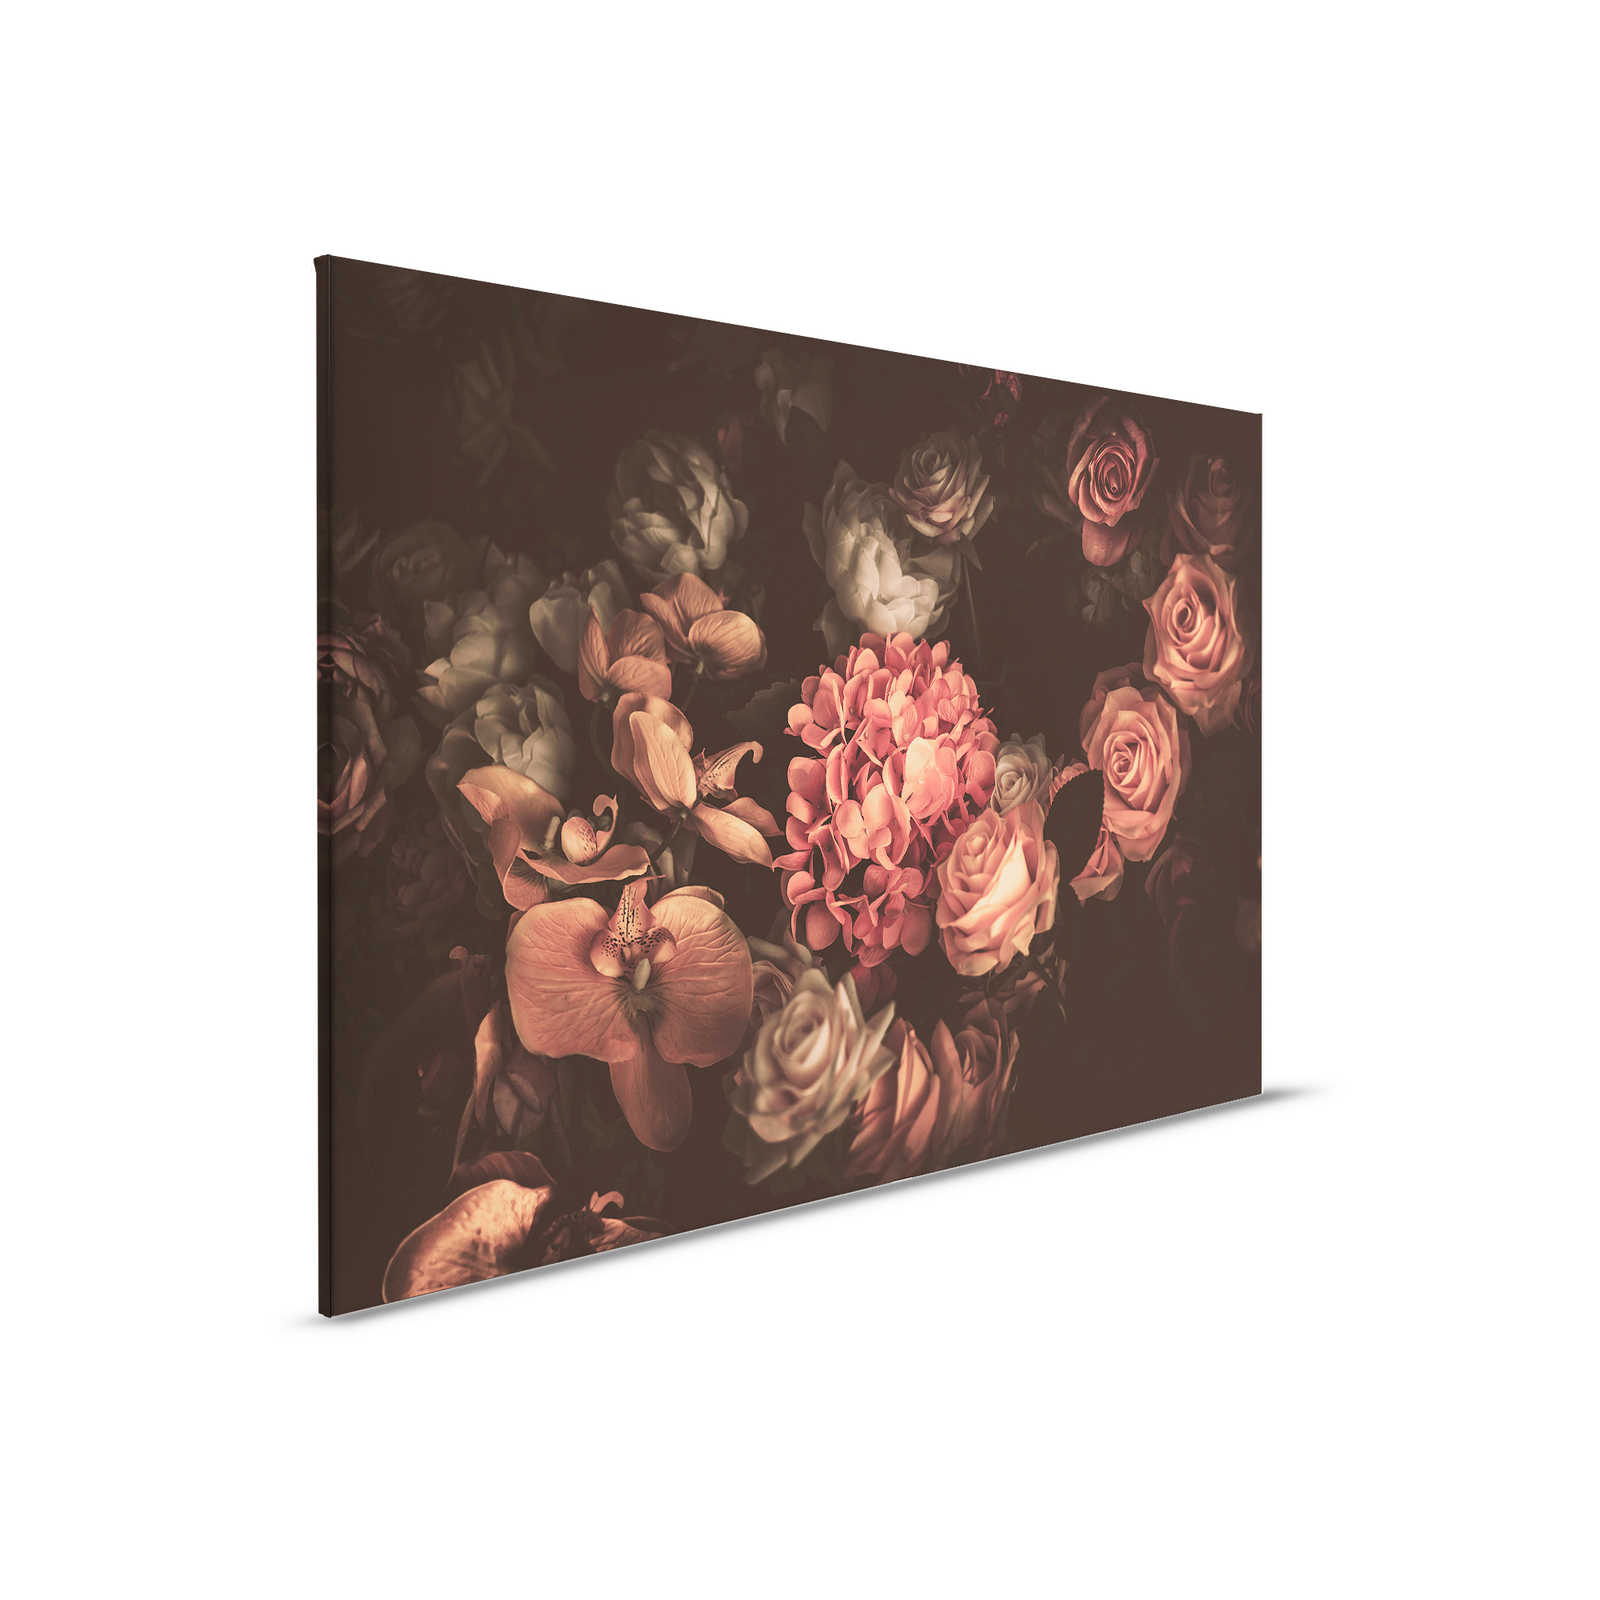         Romantische Leinwand mit Blumenstrauß – 0,90 m x 0,60 m
    